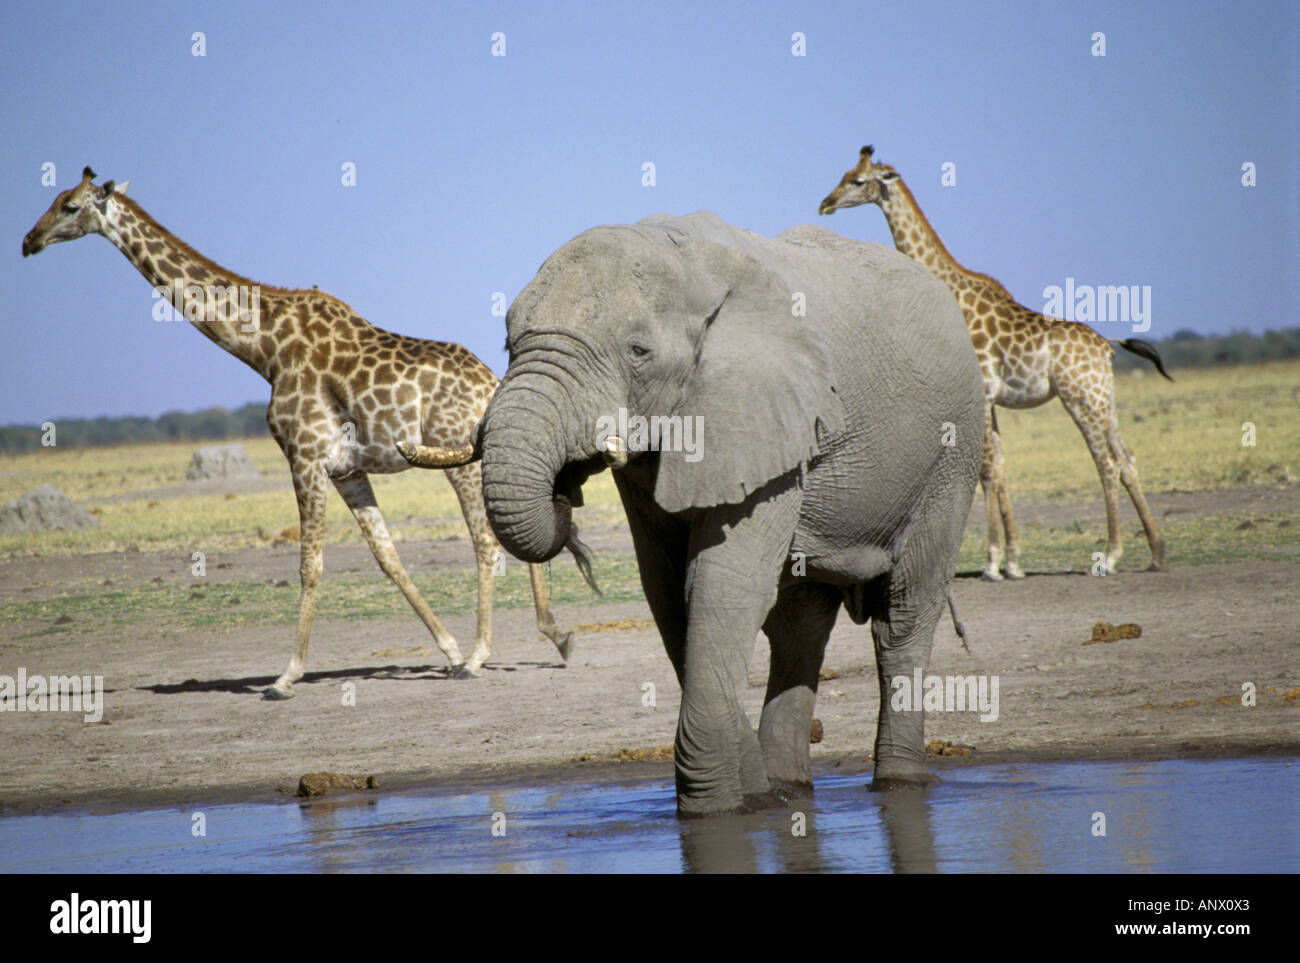 Afrika, Kenia, Masai Mara. Elefant (Loxodonta Africana) und Giraffen am Wasserloch Stockfoto